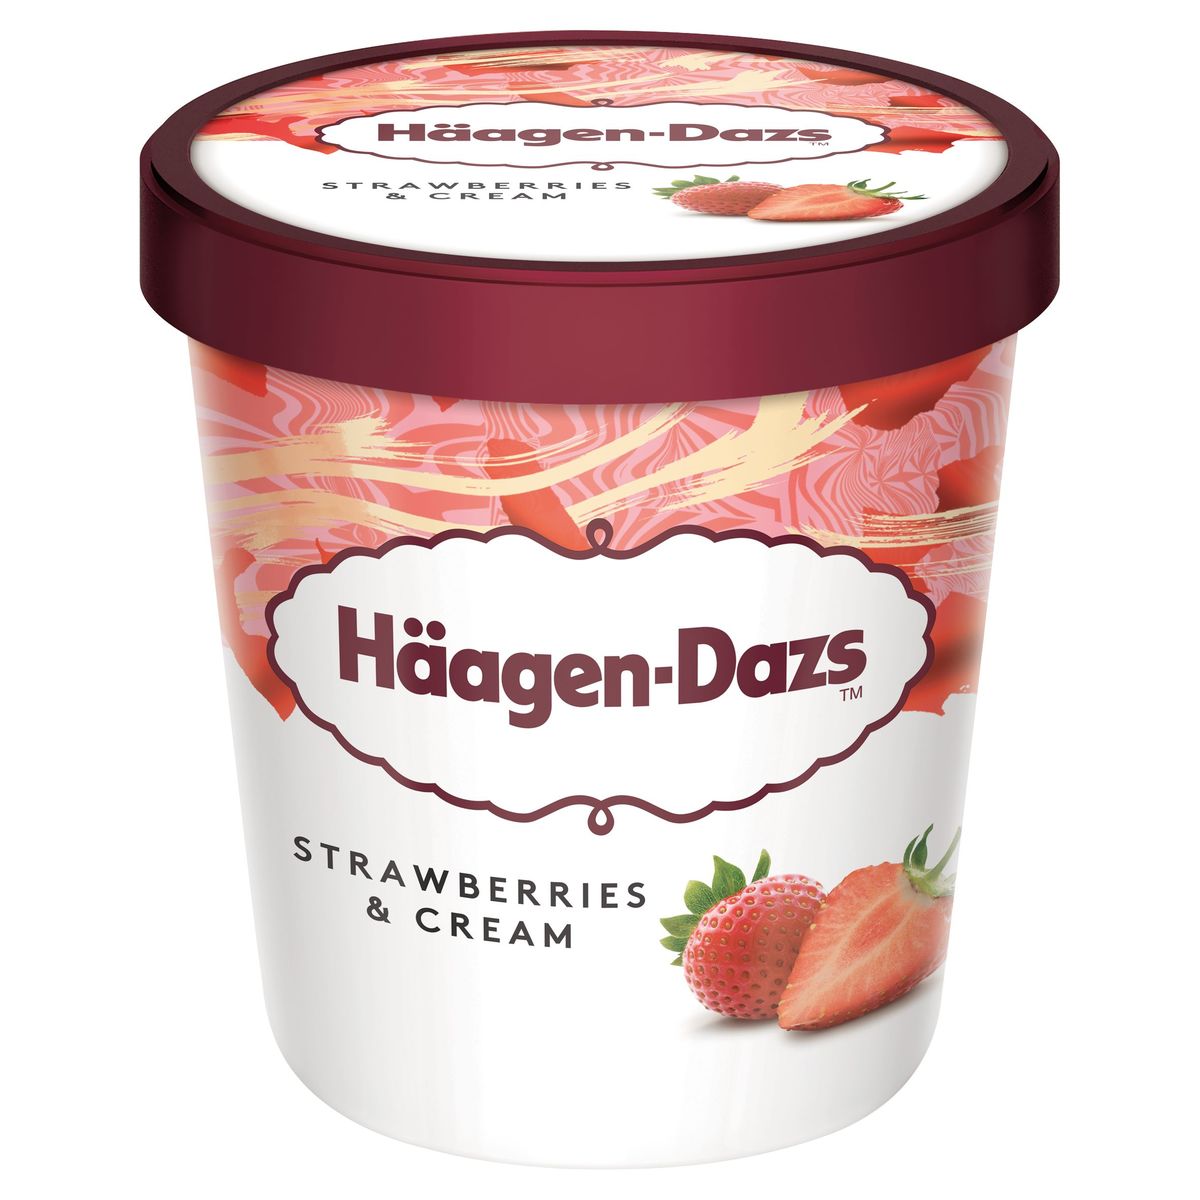 Häagen-Dazs Strawberries & Cream 400 g